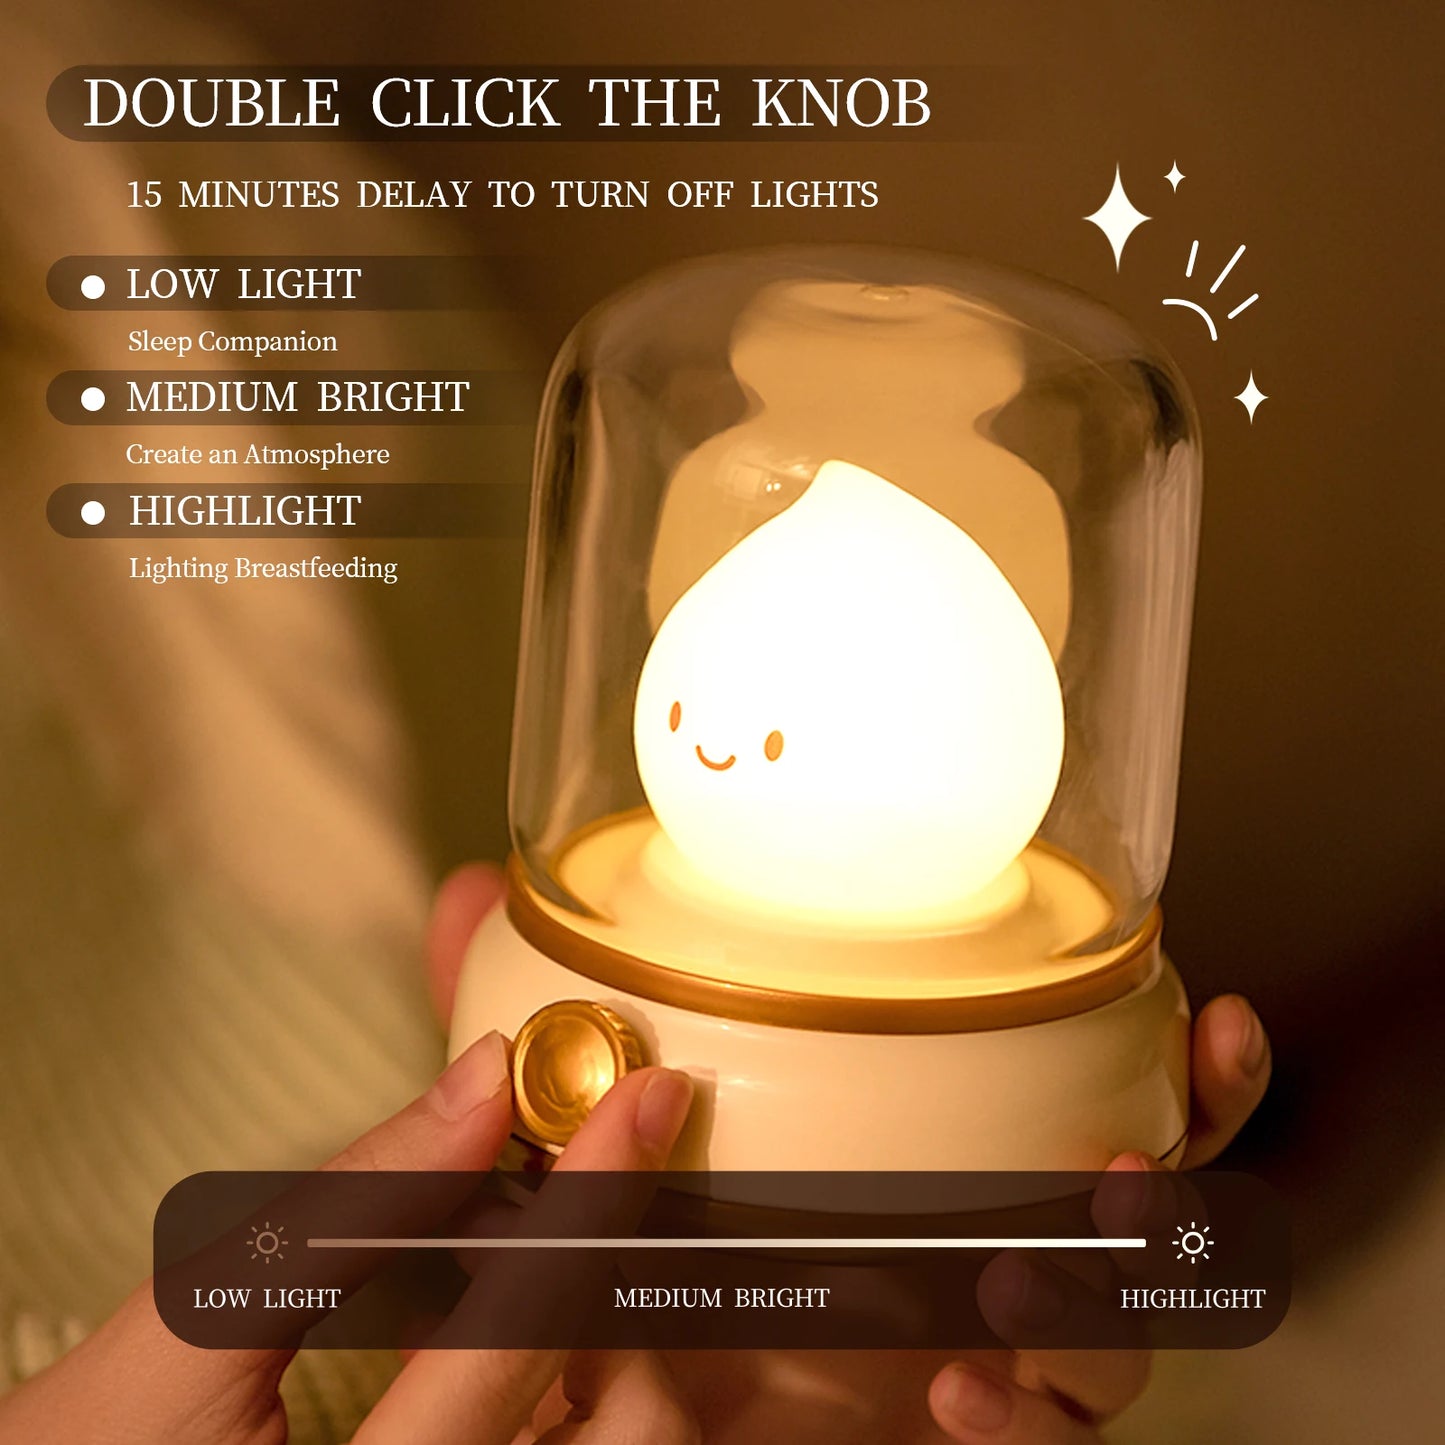 Minin's Cute Flare Lamp